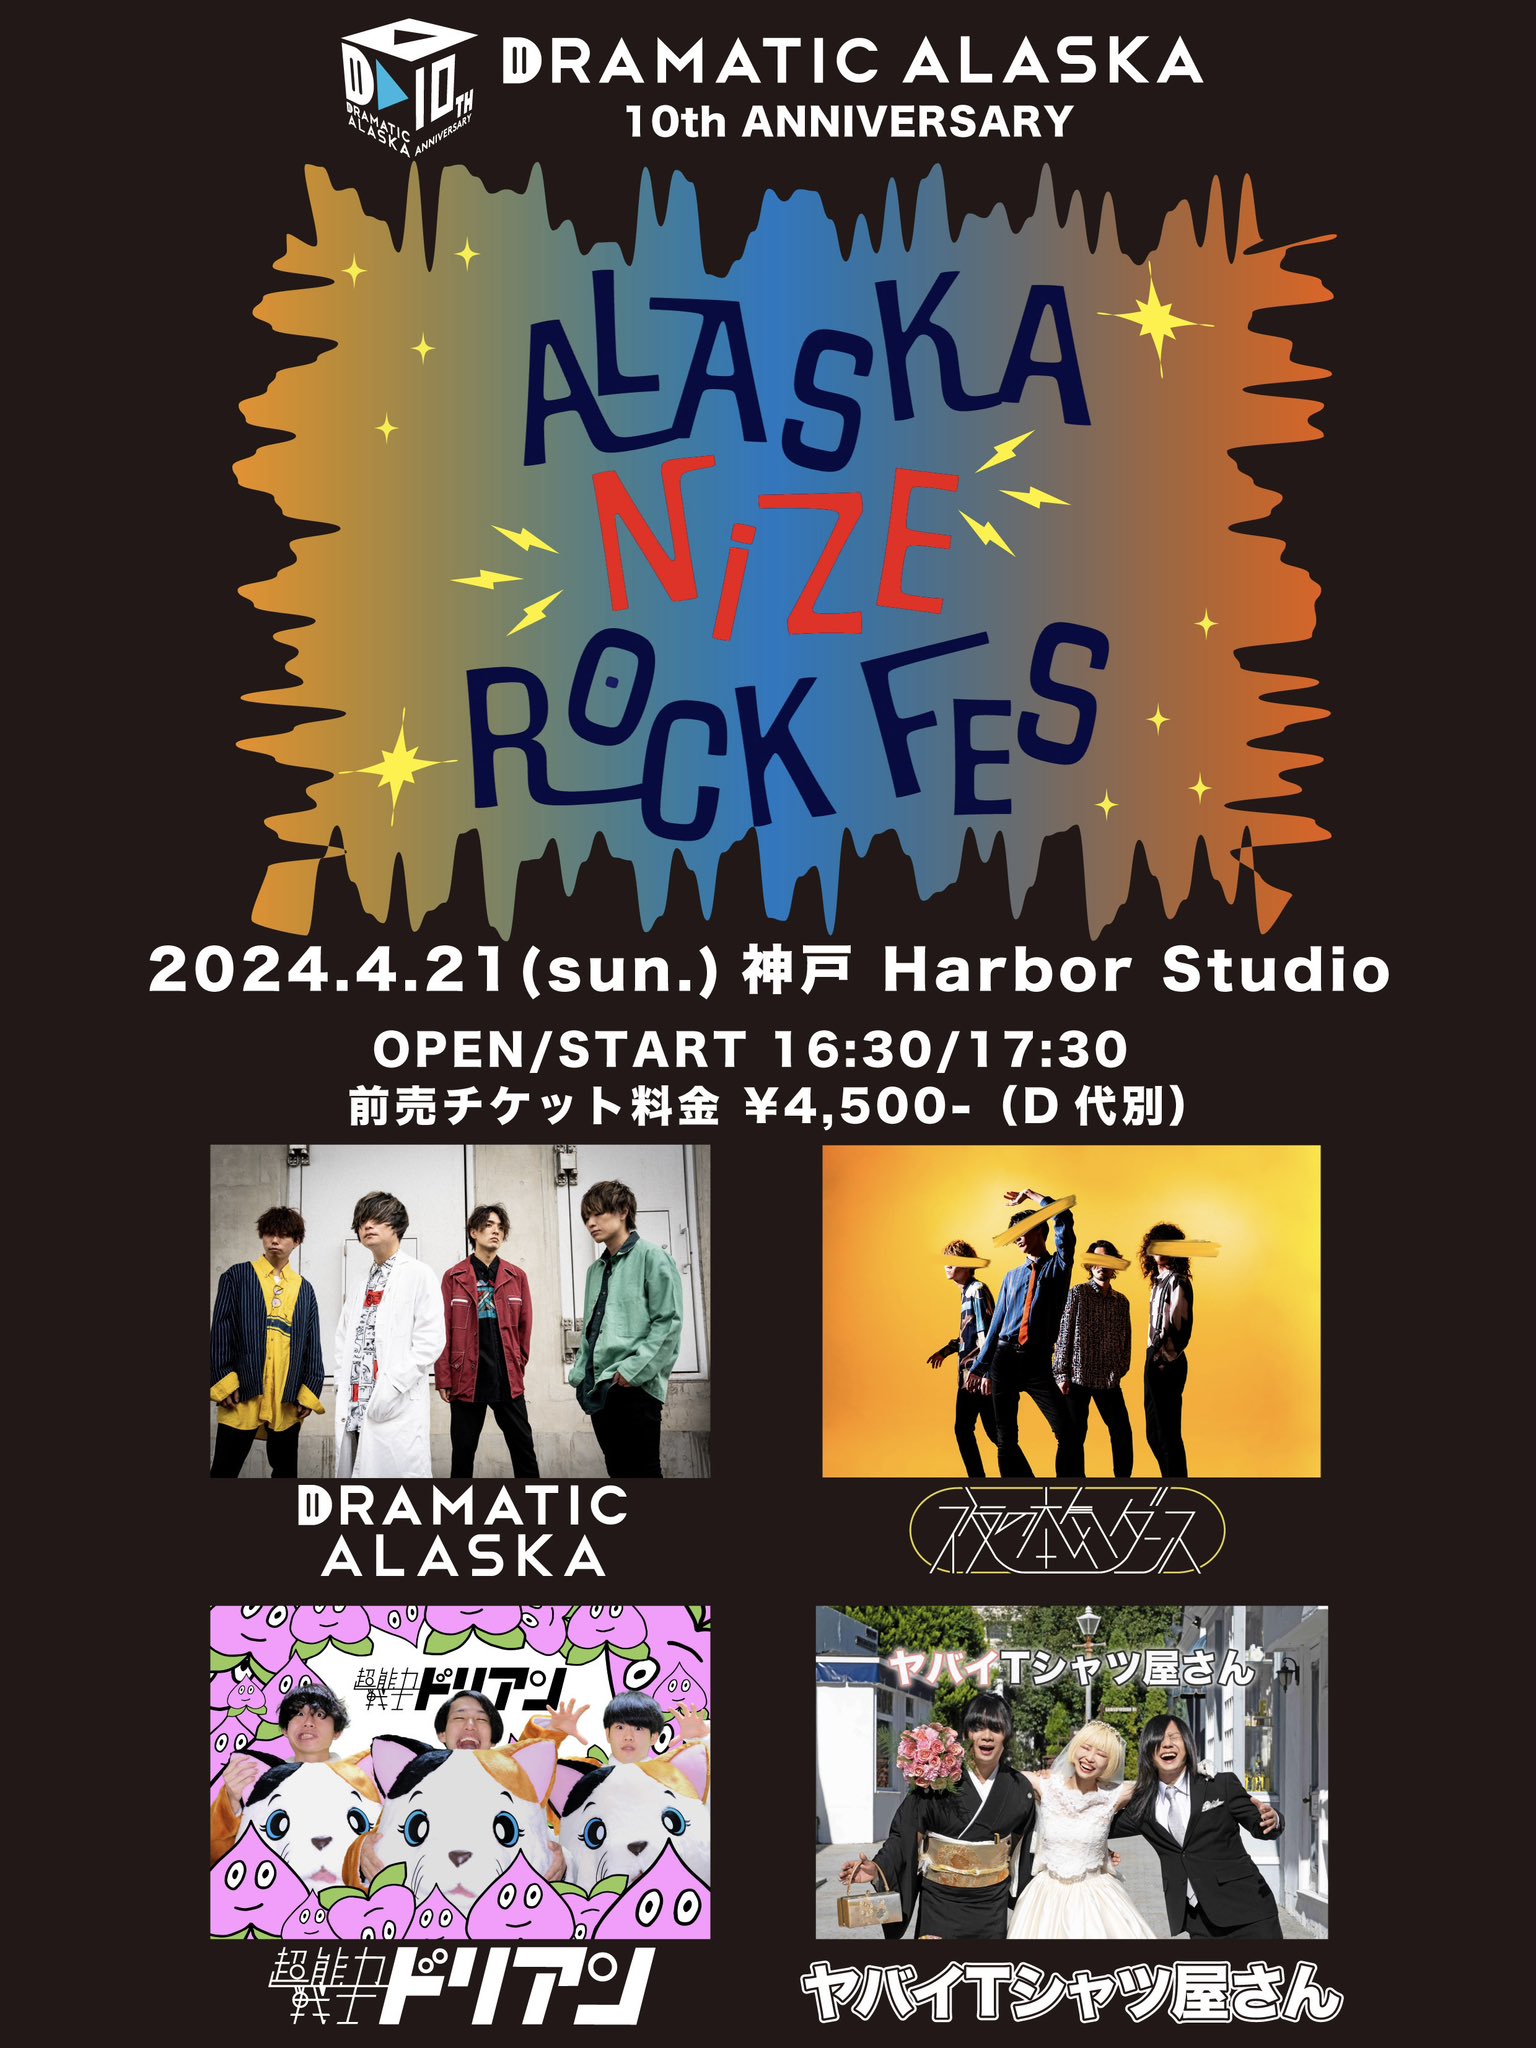 ドラマチックアラスカ 「ALASKANIZE ROCK FES 2024」